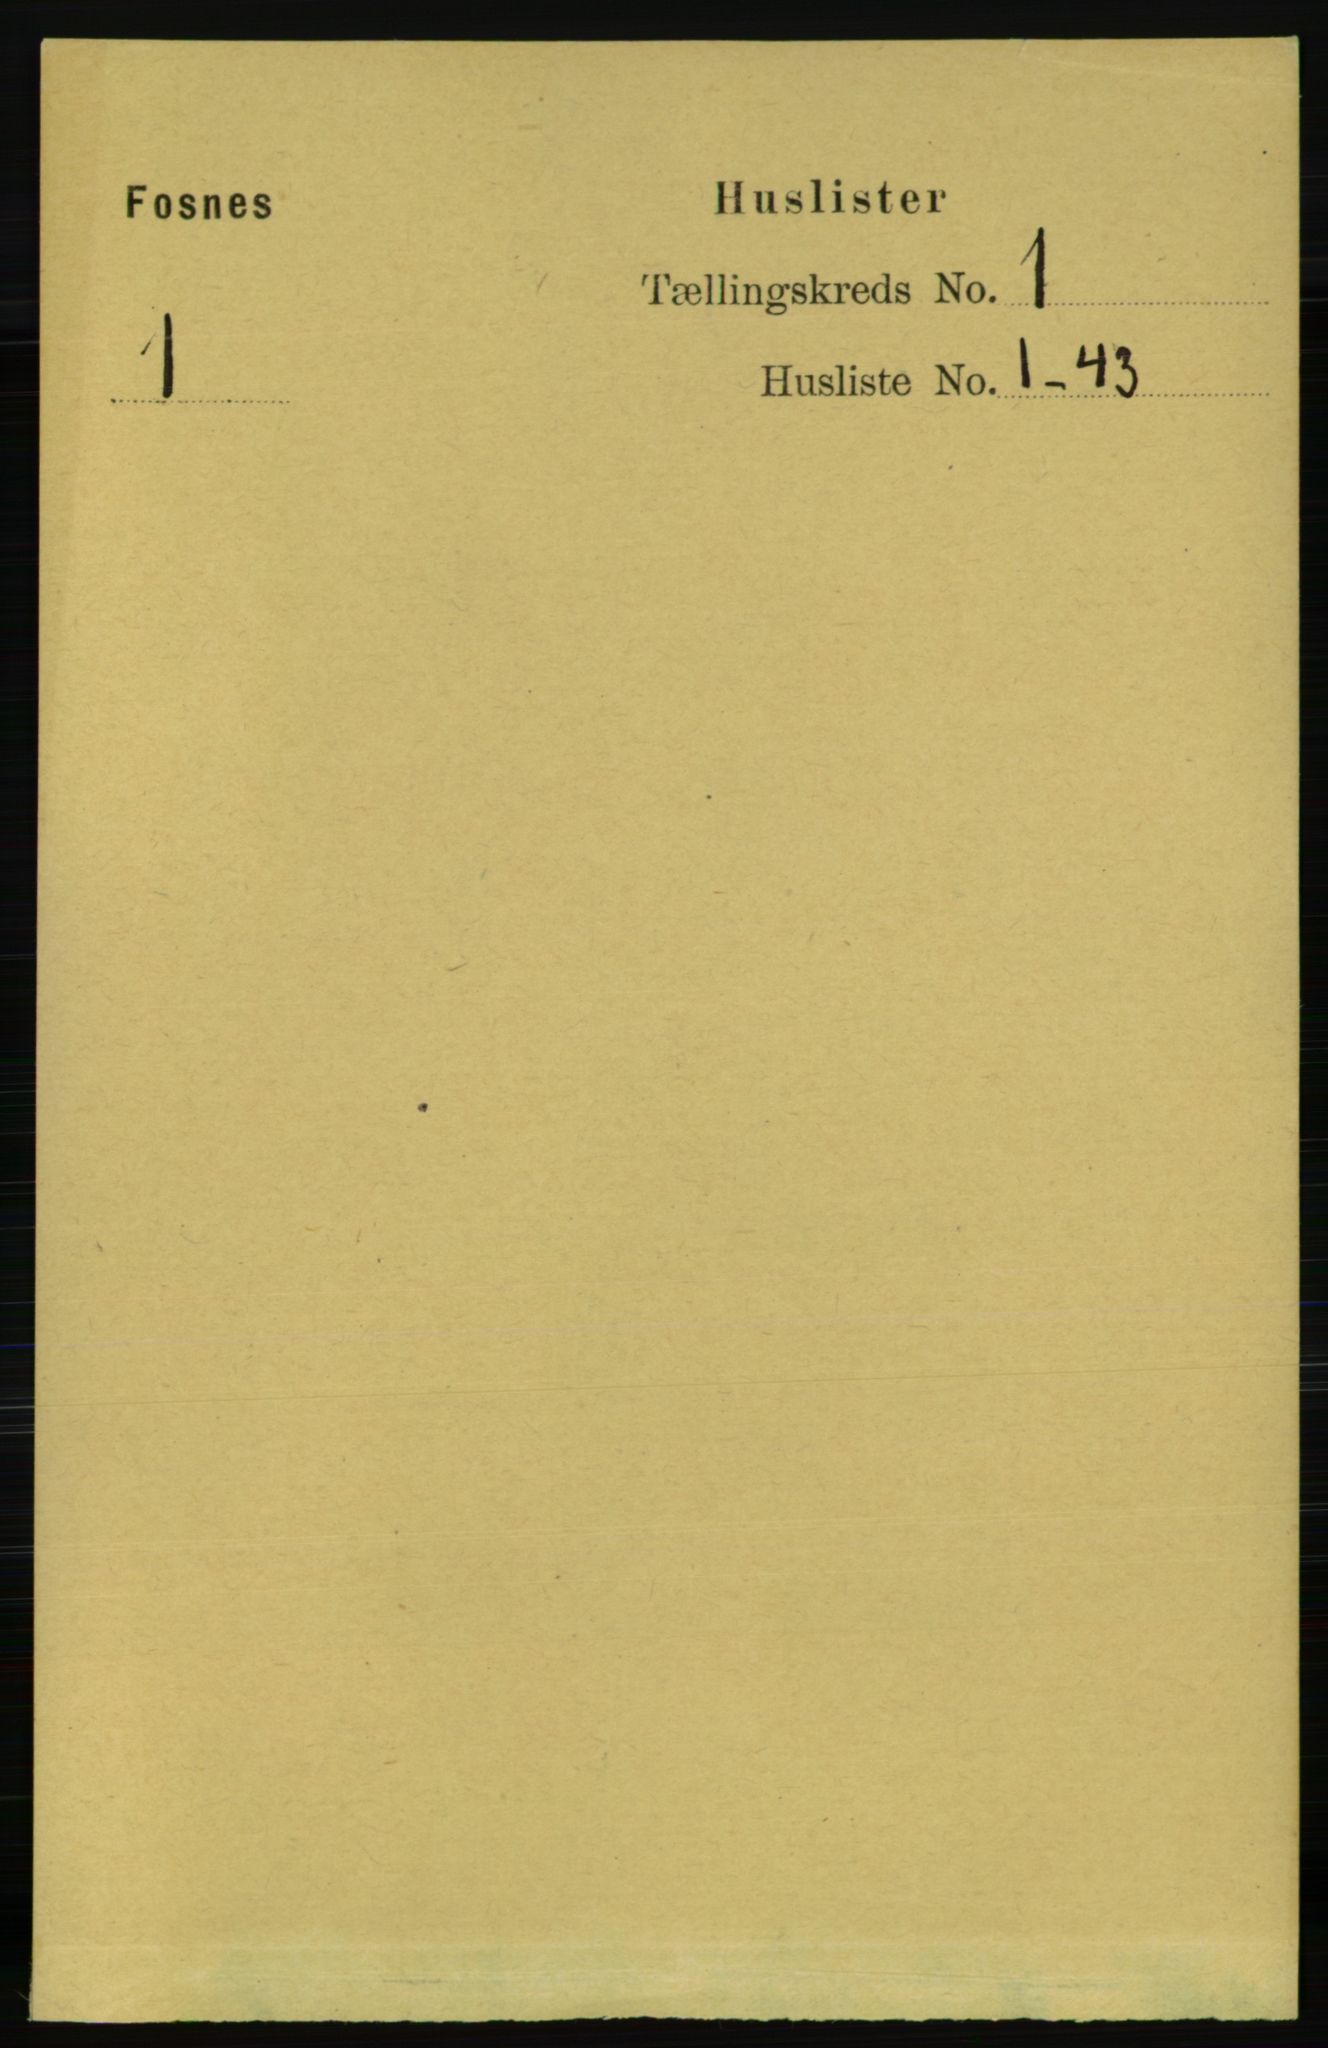 RA, Folketelling 1891 for 1748 Fosnes herred, 1891, s. 23